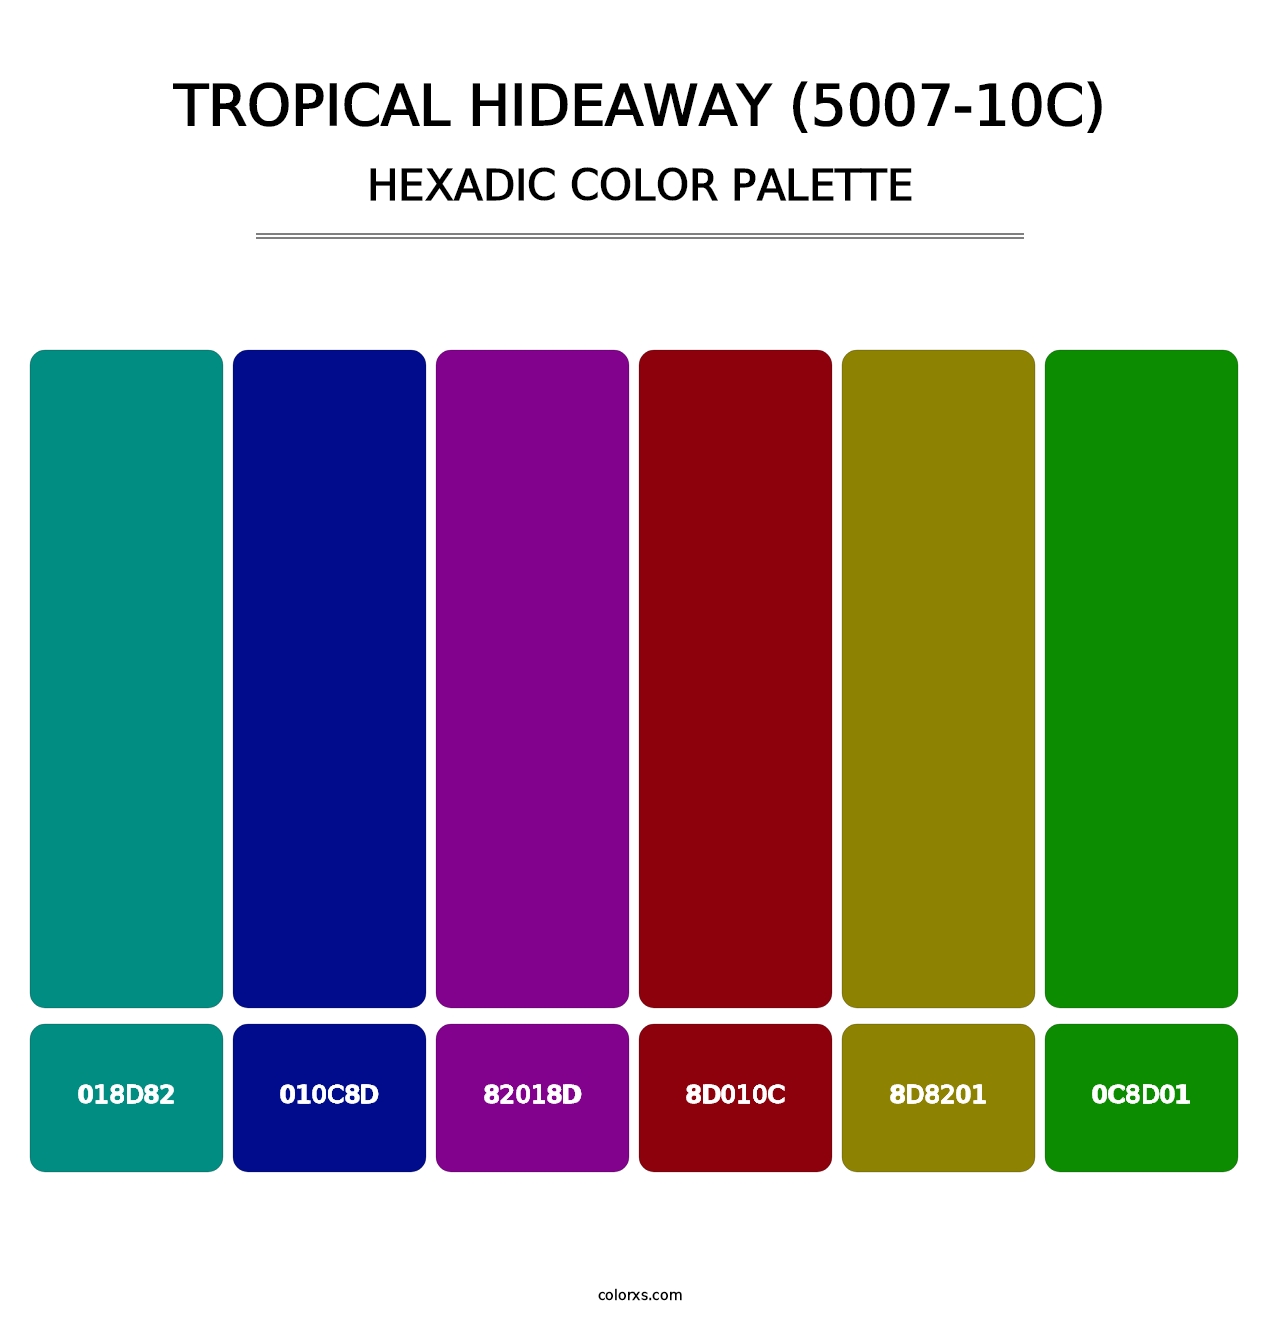 Tropical Hideaway (5007-10C) - Hexadic Color Palette